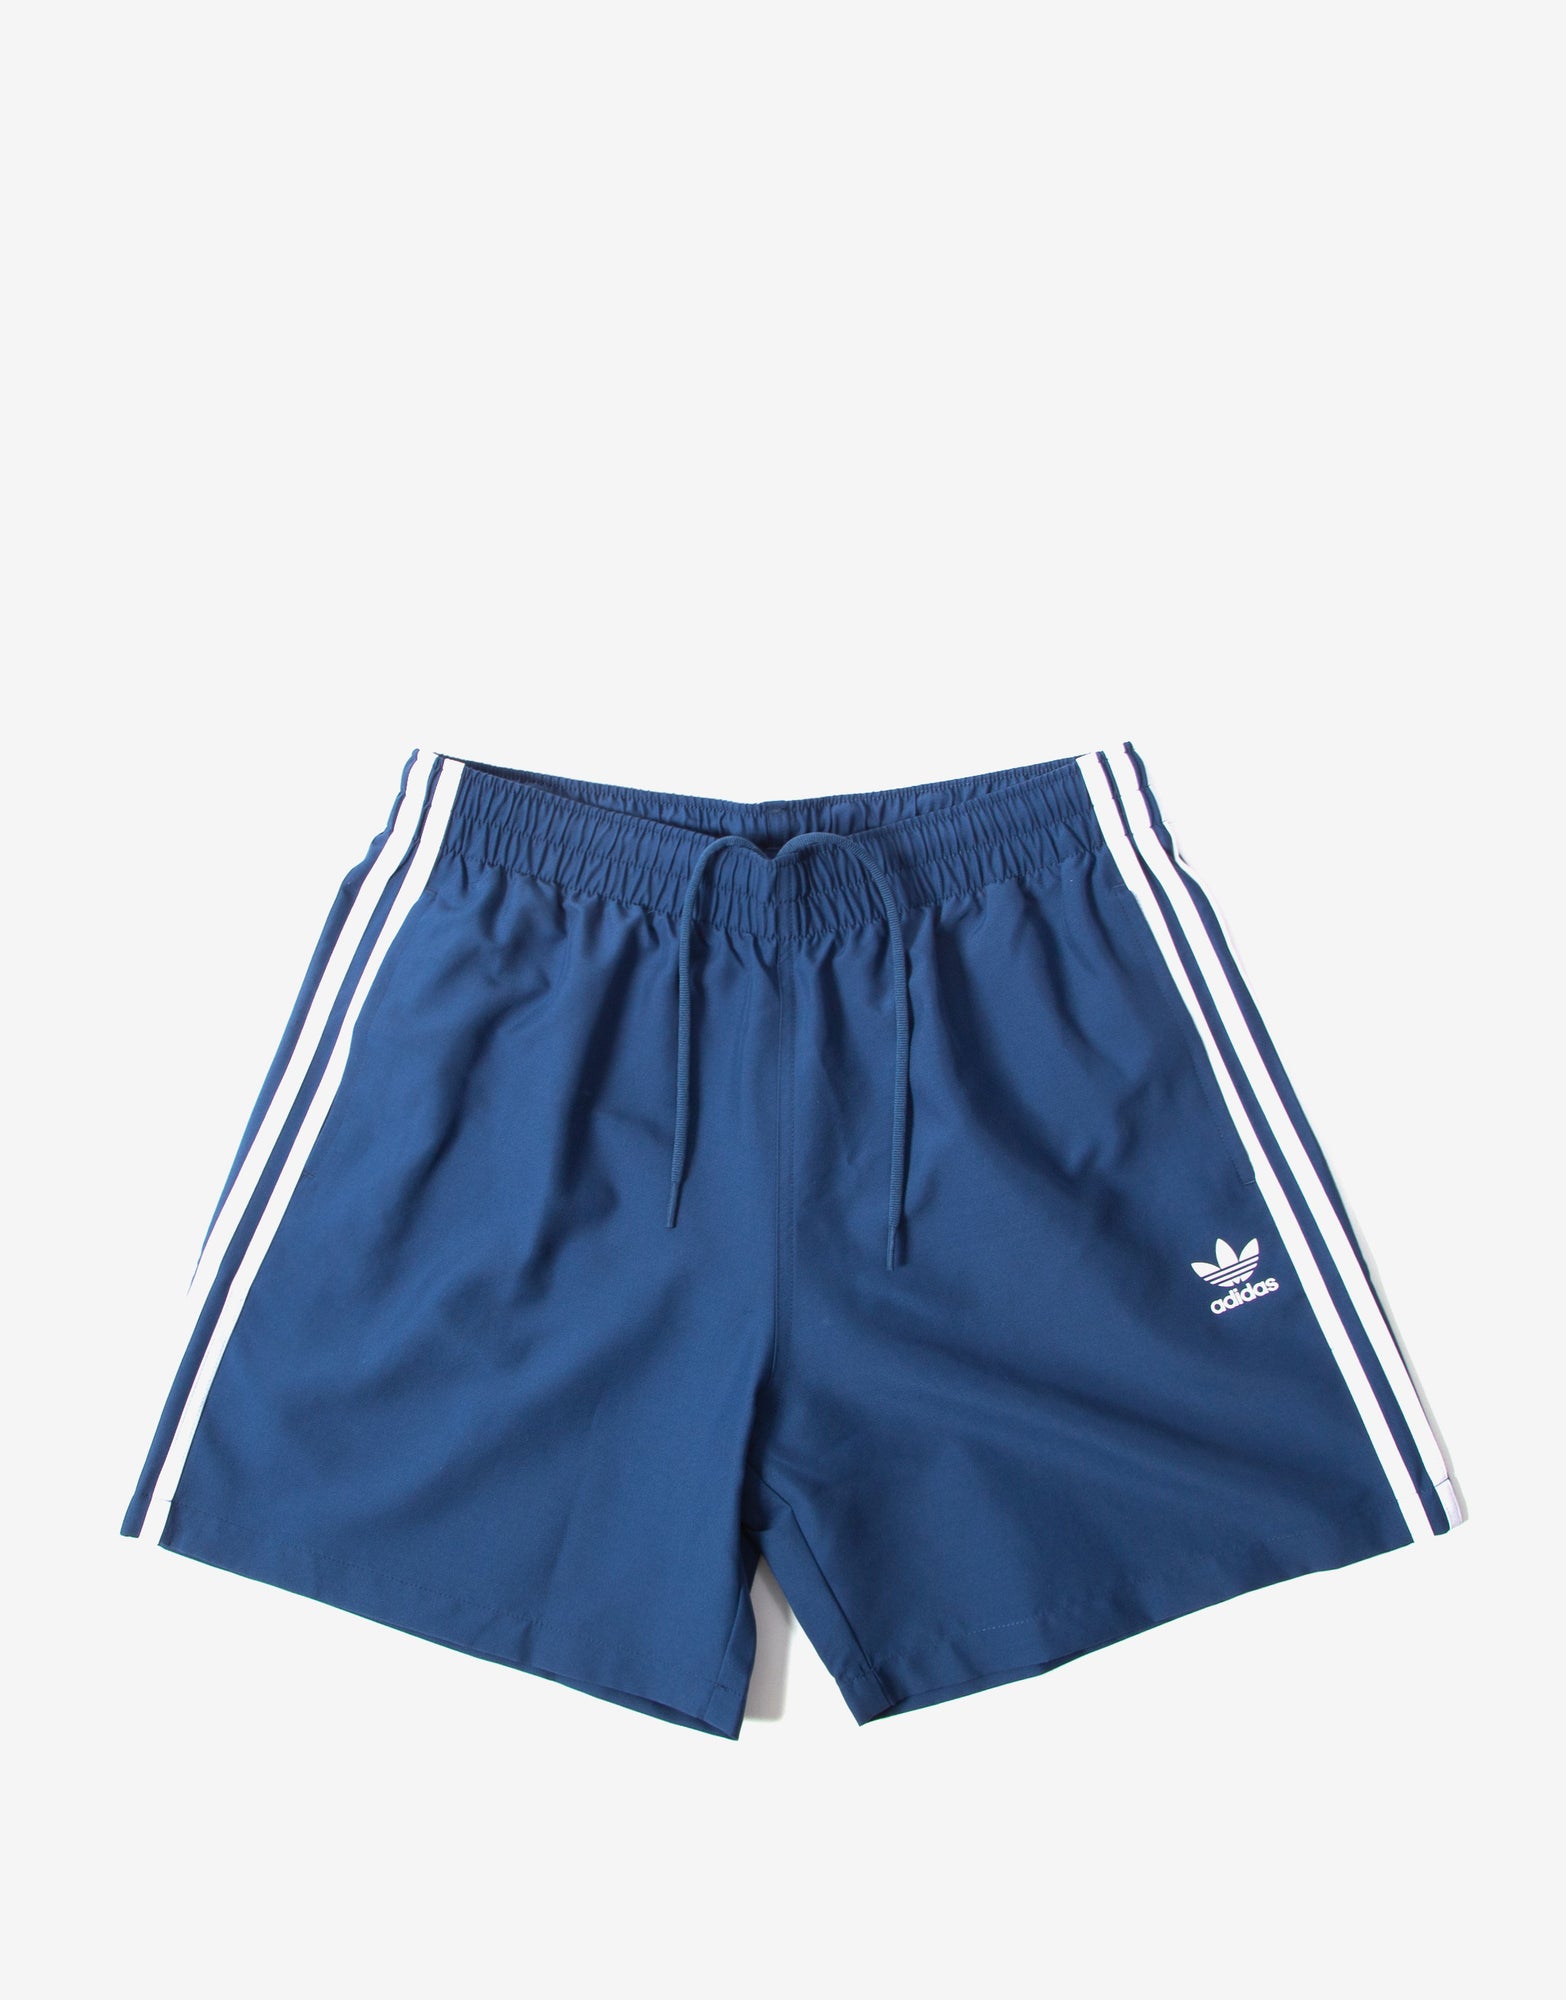 adidas 3 stripe shorts navy